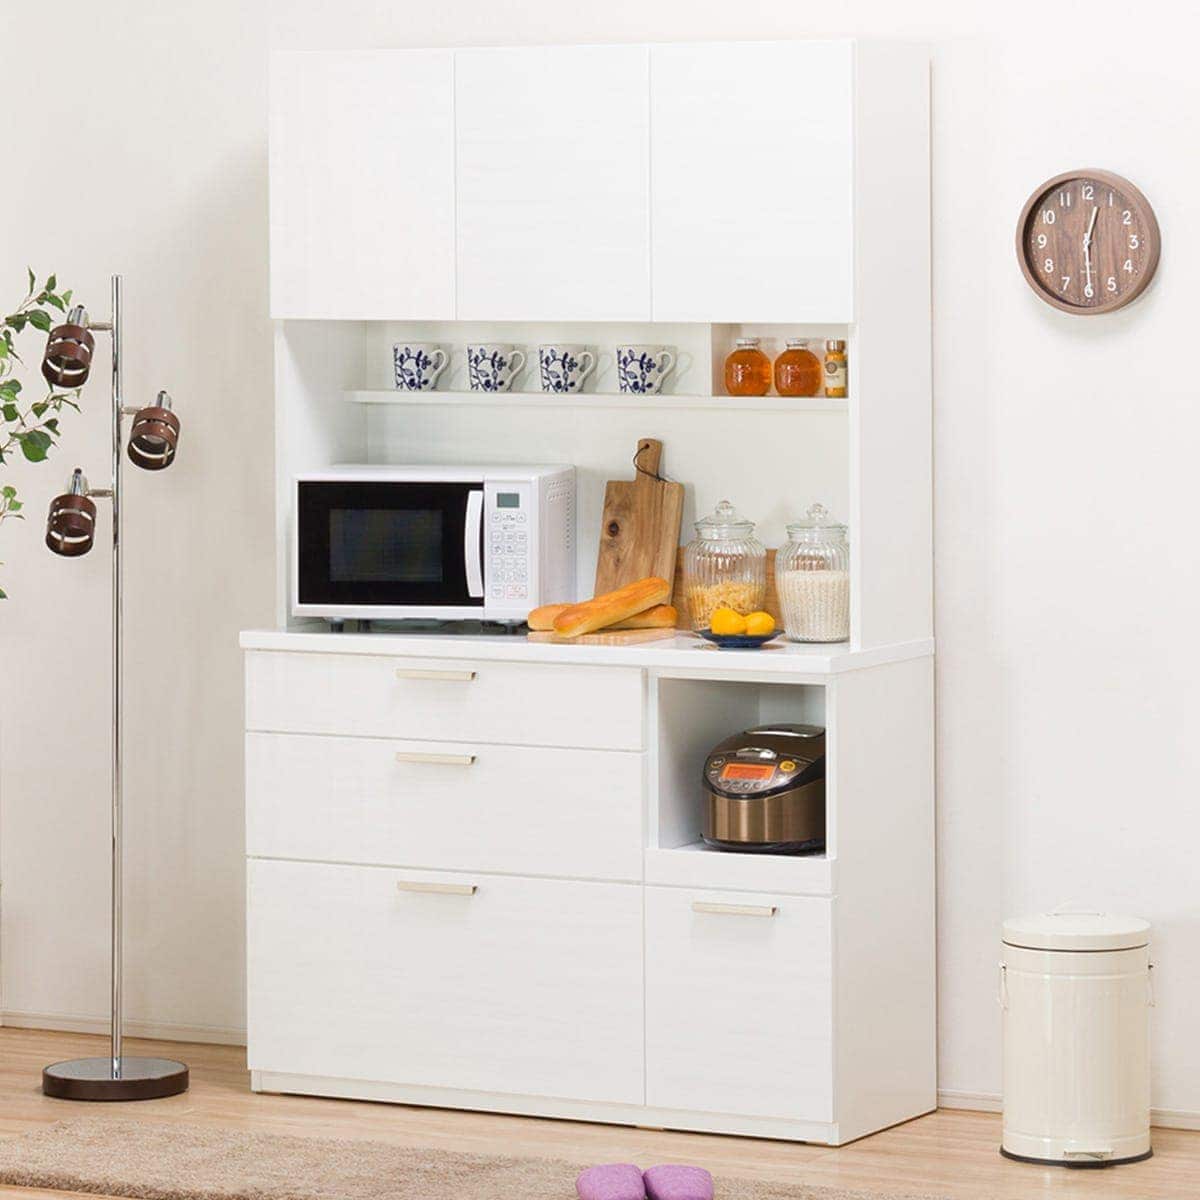 キッチンボード 白 | ニトリネット【公式】 家具・インテリア通販